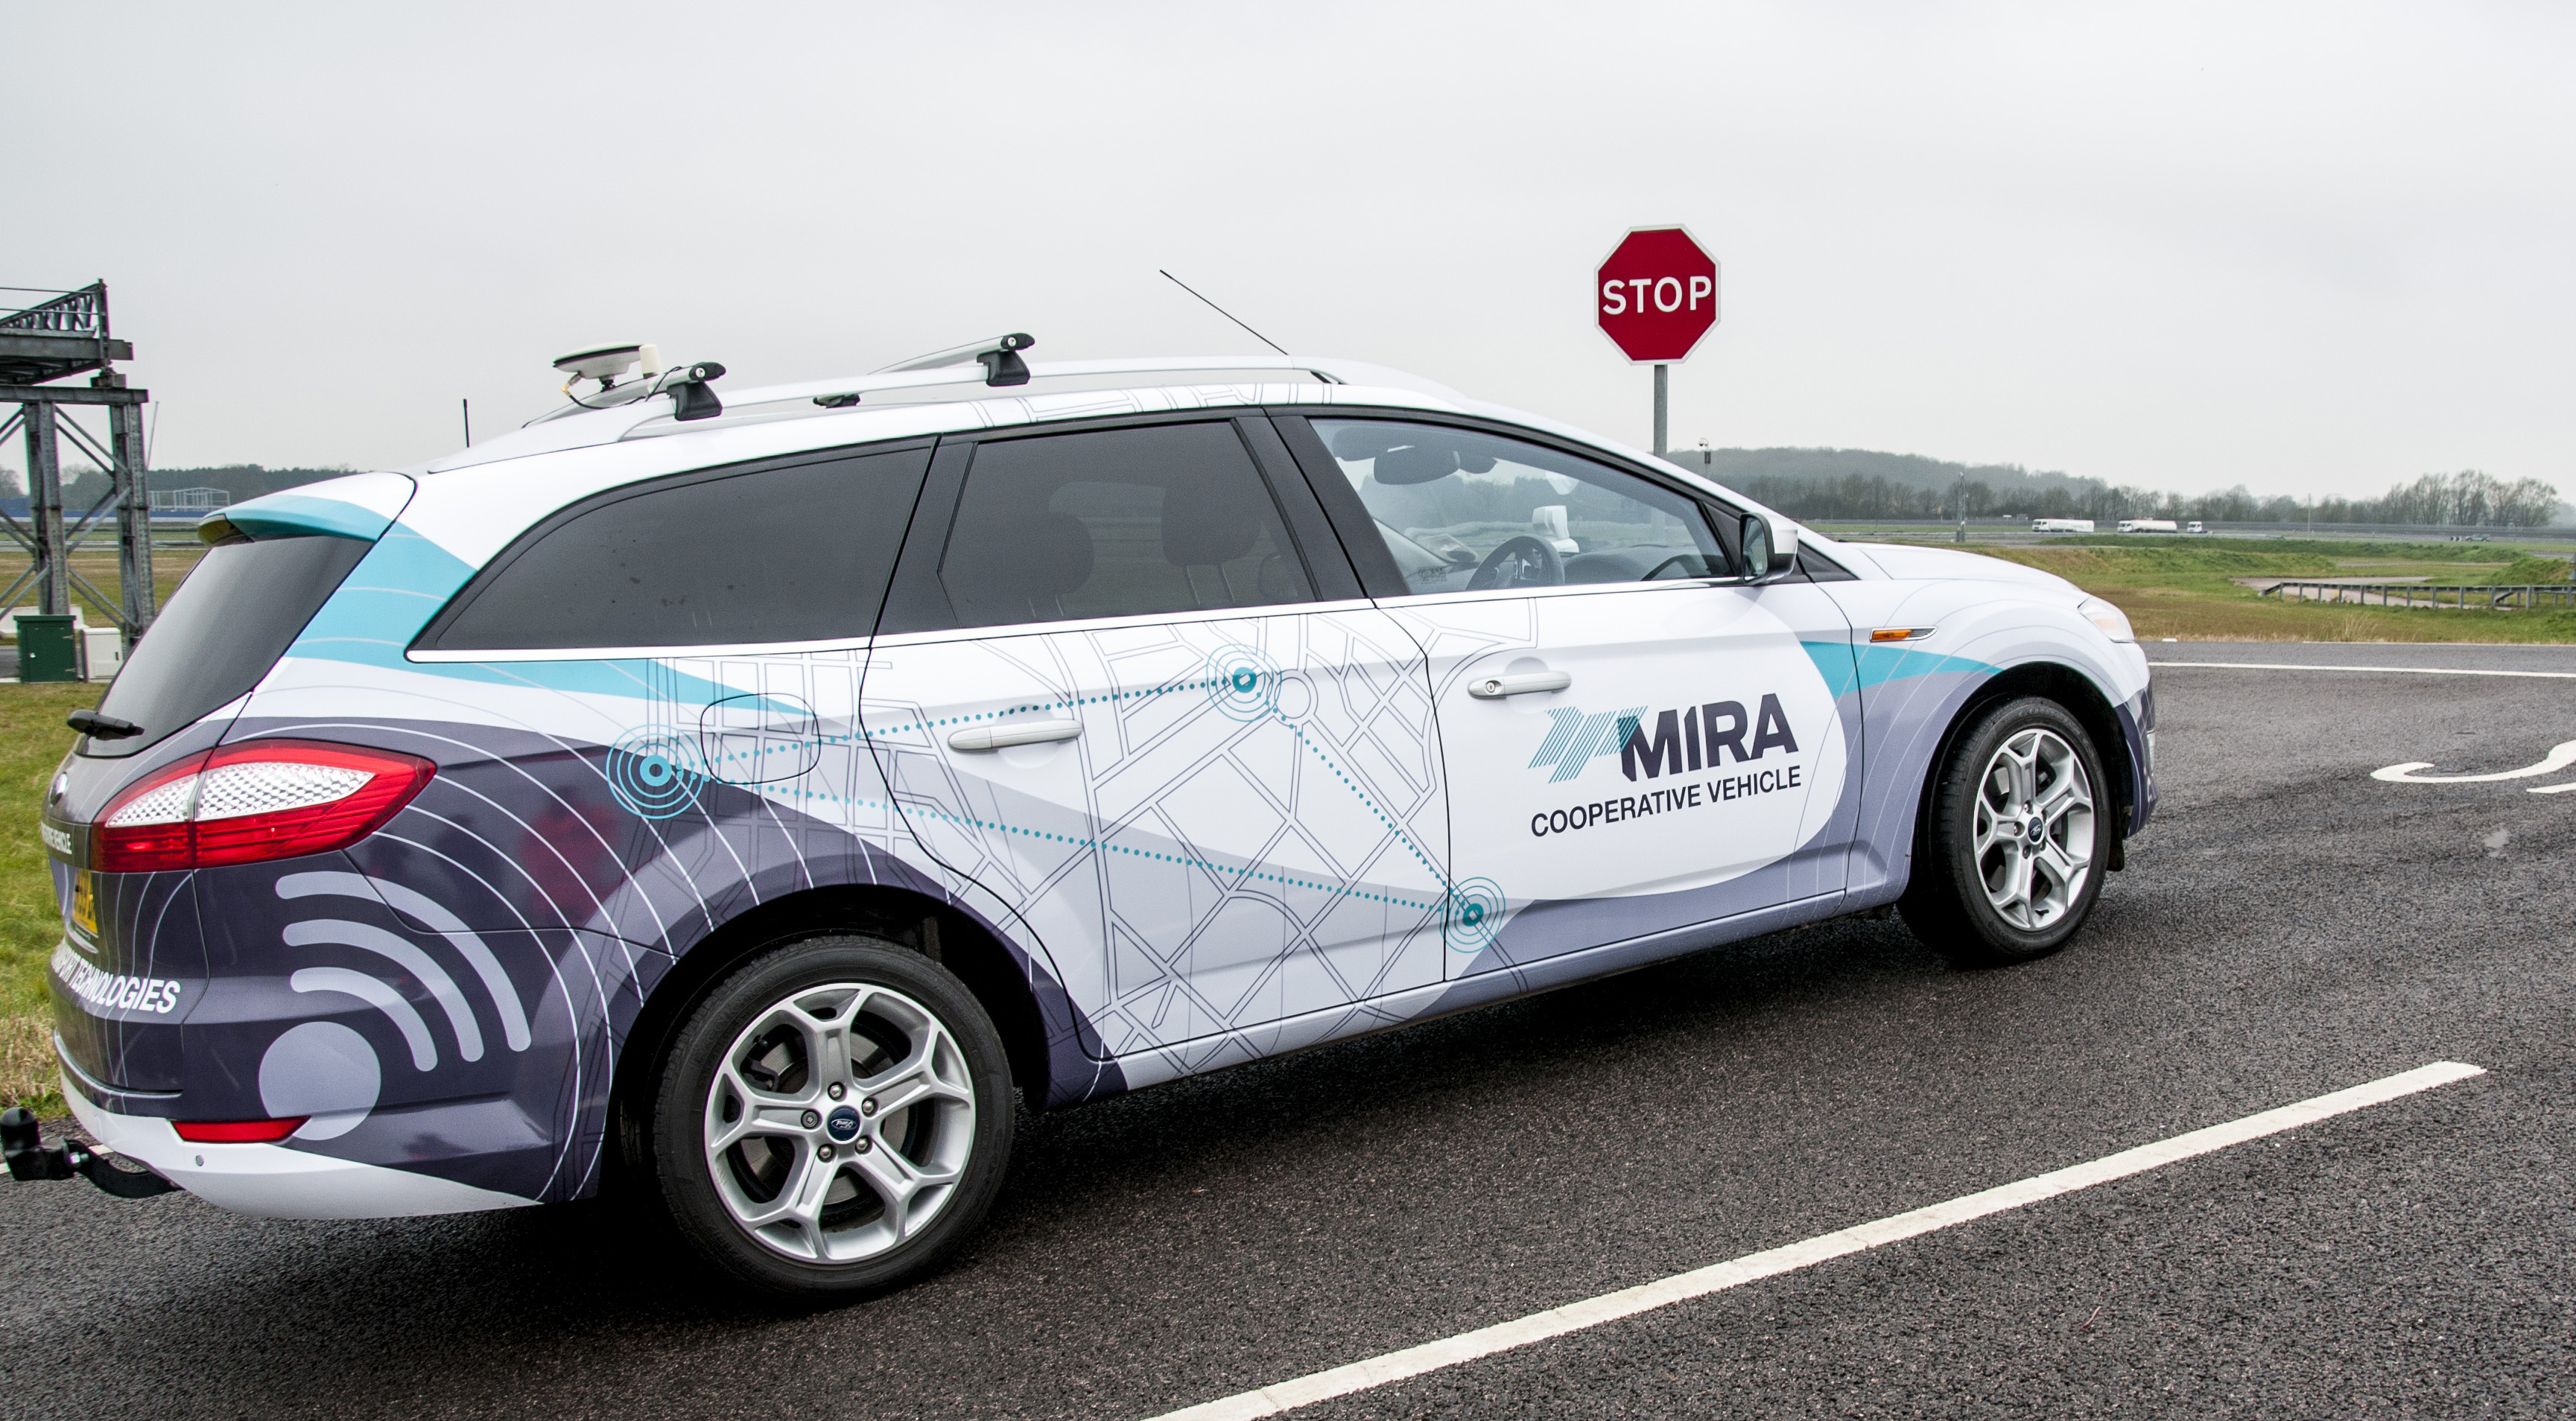 Mira’s autonomous driving test vehicle